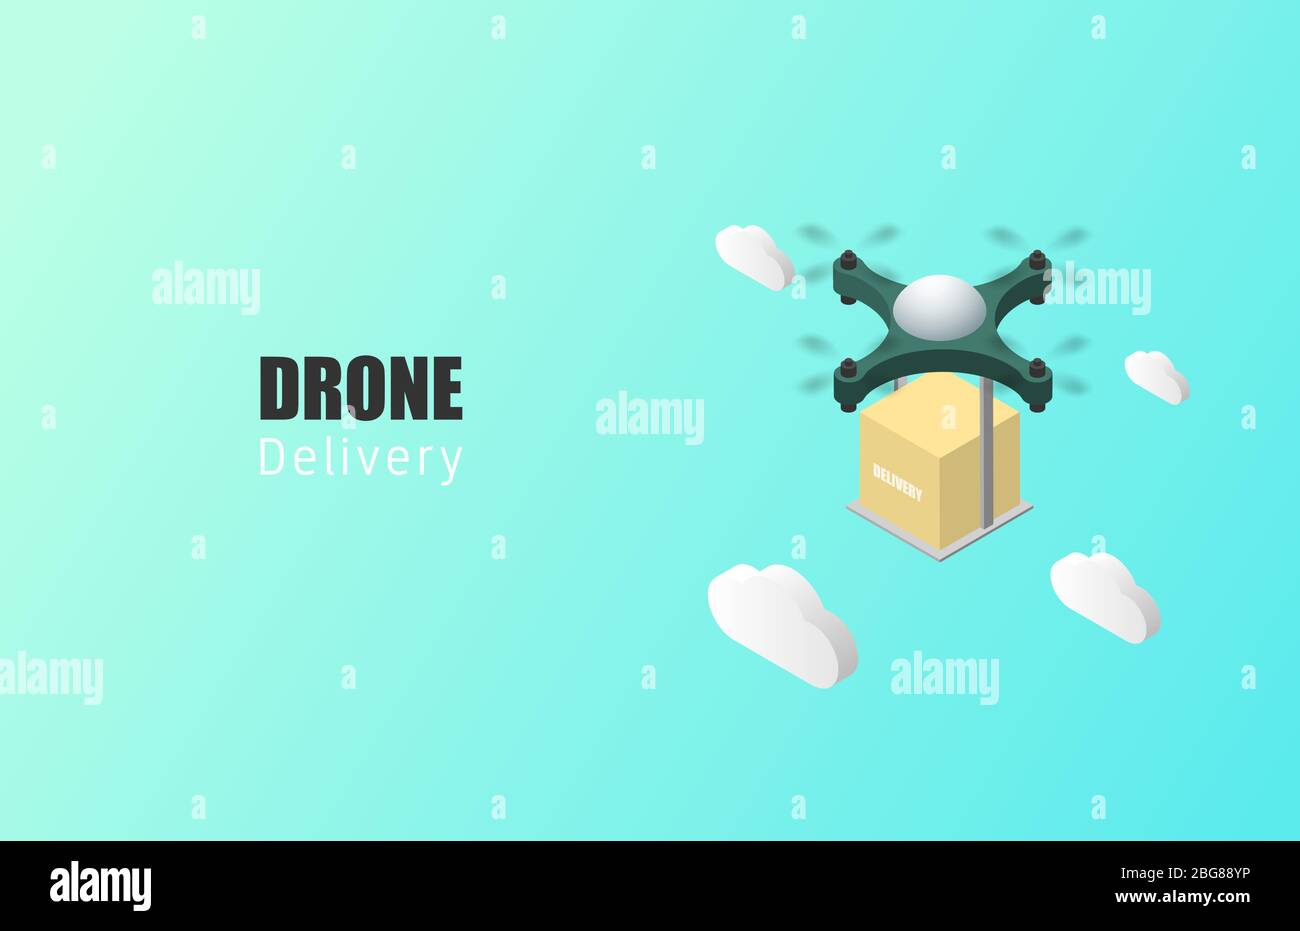 Poster o banner di concetto di consegna dei droni con drone isometrico che trasporta pacchi in aria. Illustrazione Vettoriale